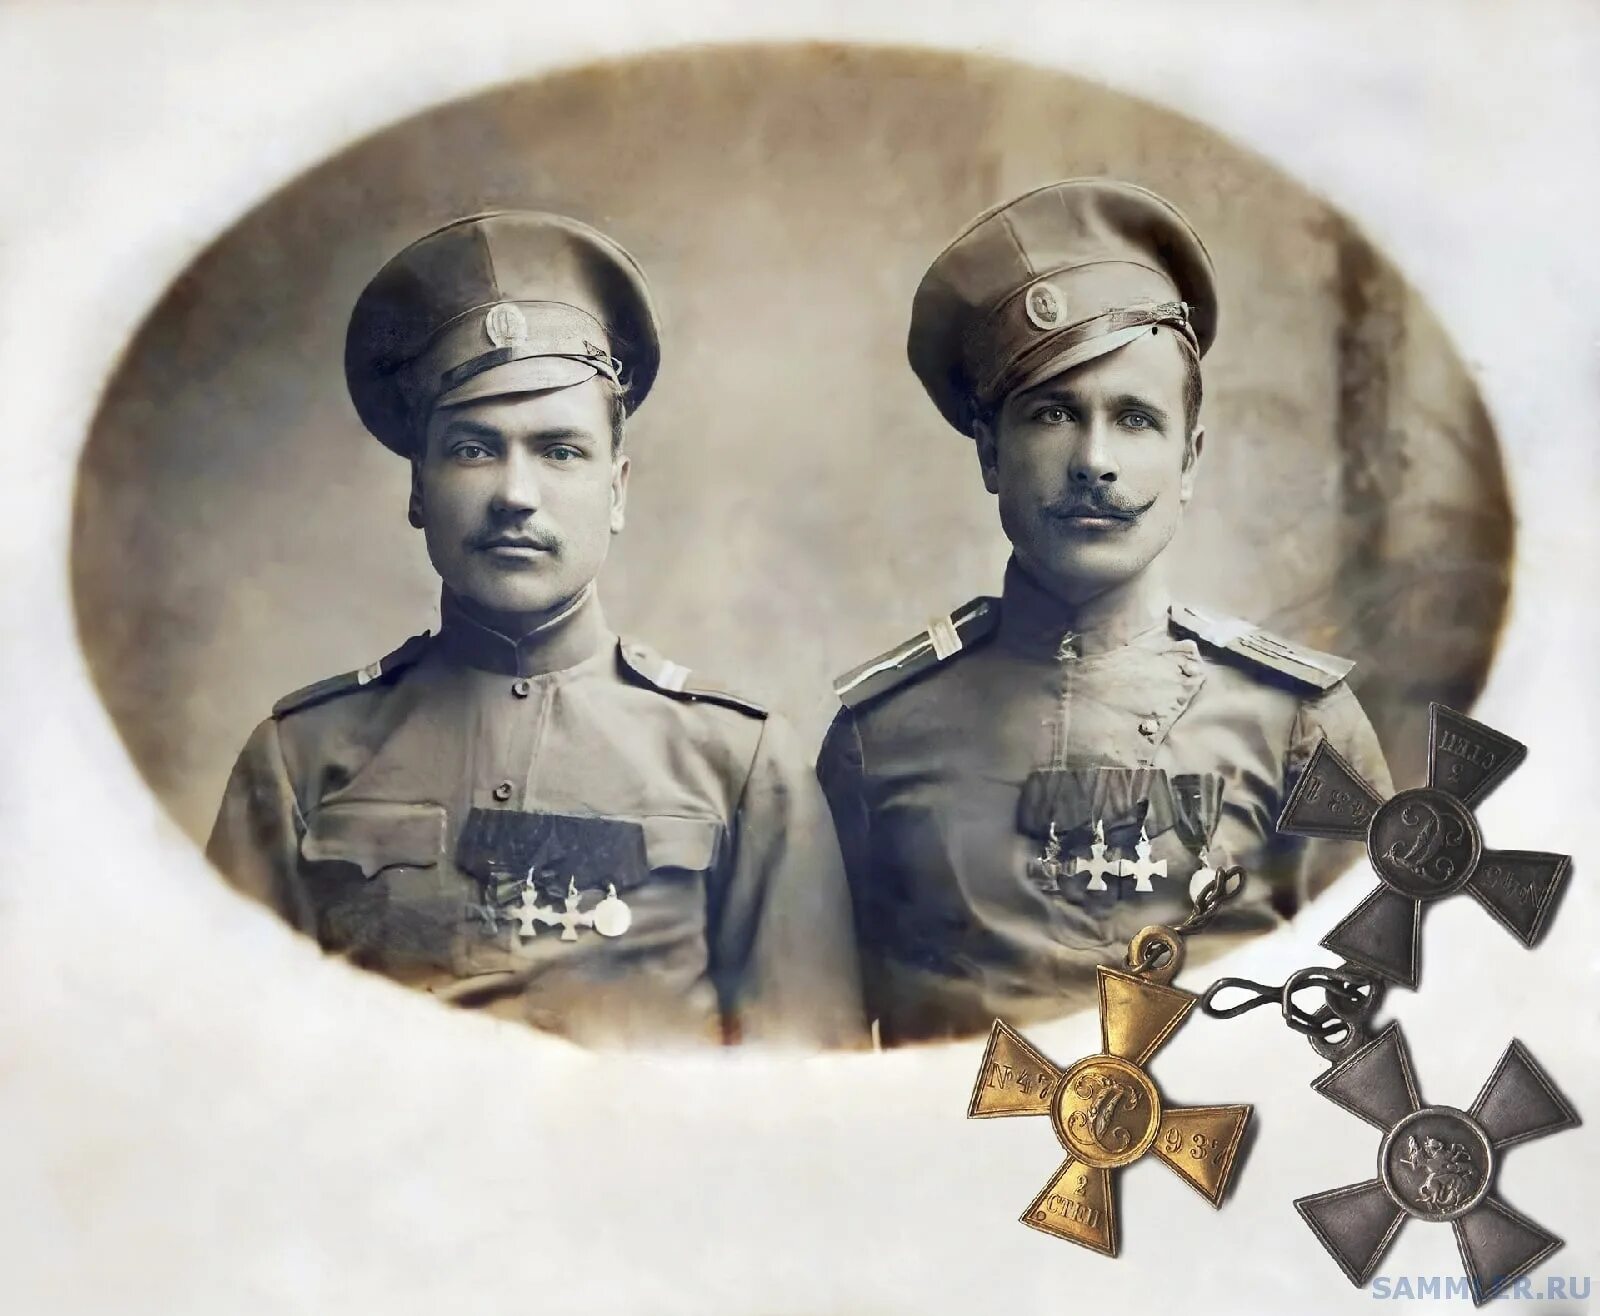 Унтер-офицер Георгиевский кавалер. 1 Георгиевский кавалер 1 мировой войны.